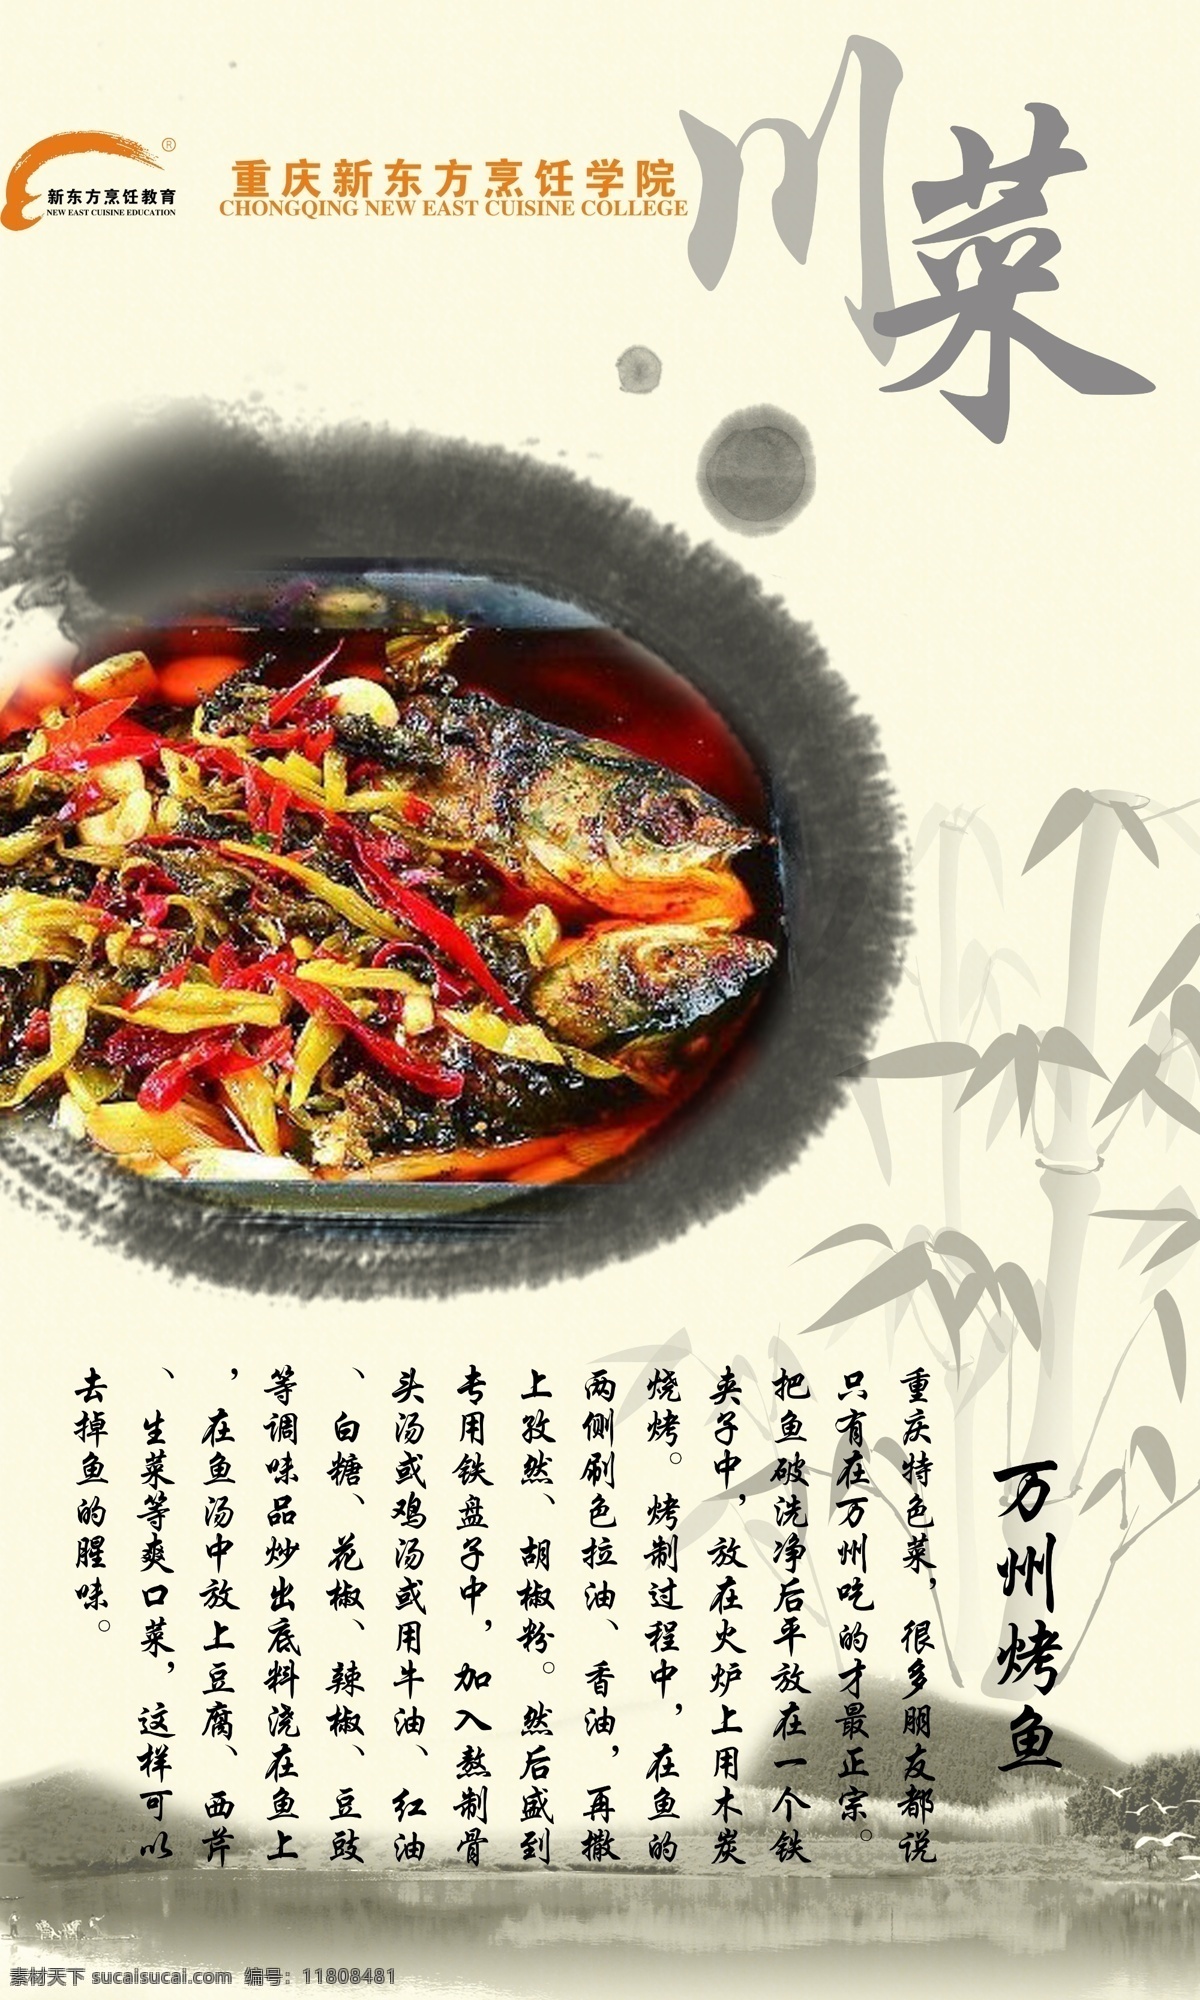 万州烤鱼 川菜 中国风 水墨 竹子 重庆 新东方 烹饪学校 广告设计模板 源文件